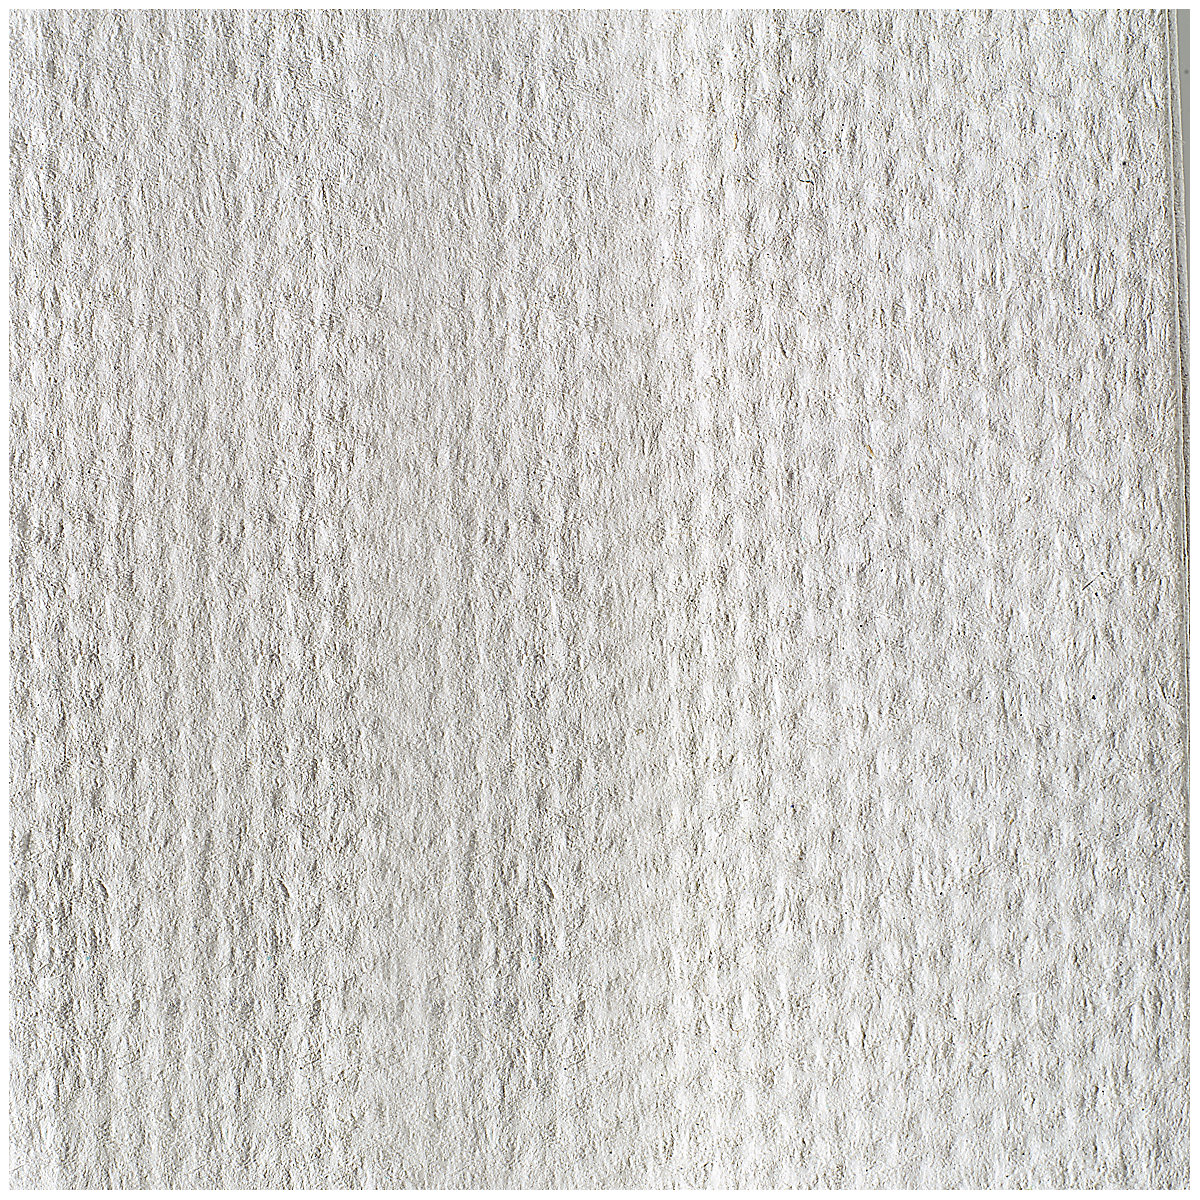 Skladané papierové uteráky – TORK (Zobrazenie produktu 7)-6